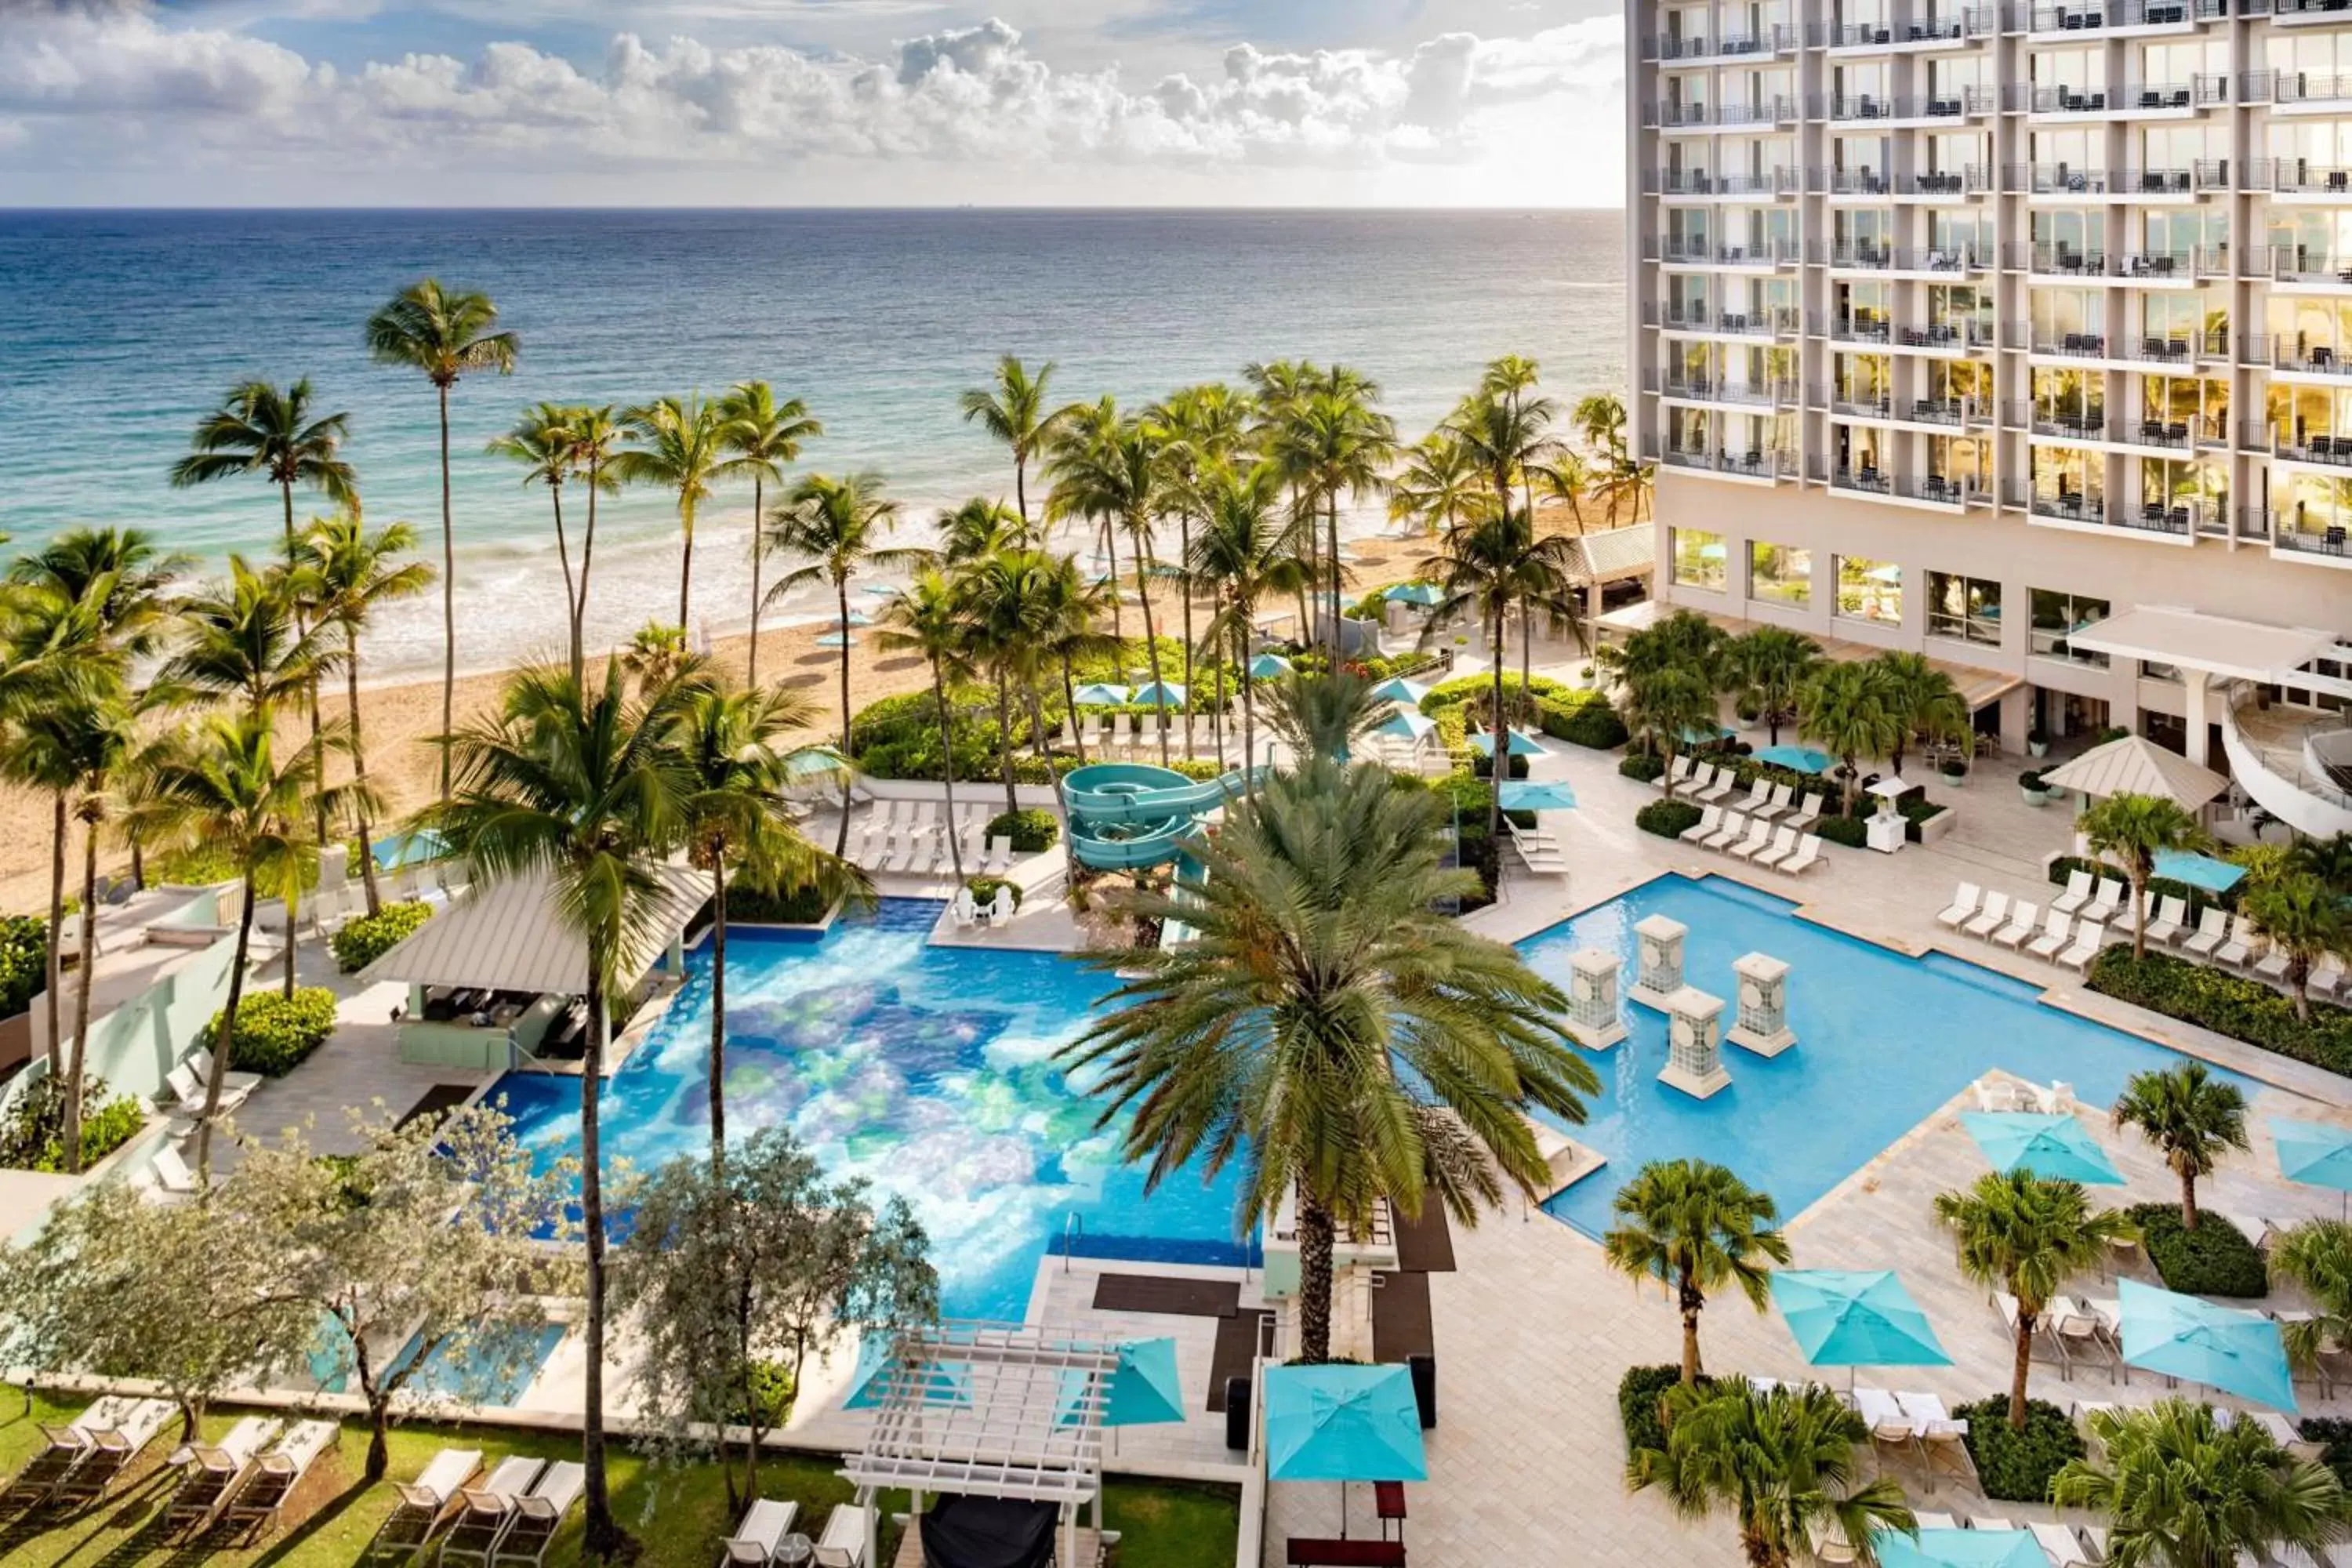 Property building, Pool View in San Juan Marriott Resort and Stellaris Casino